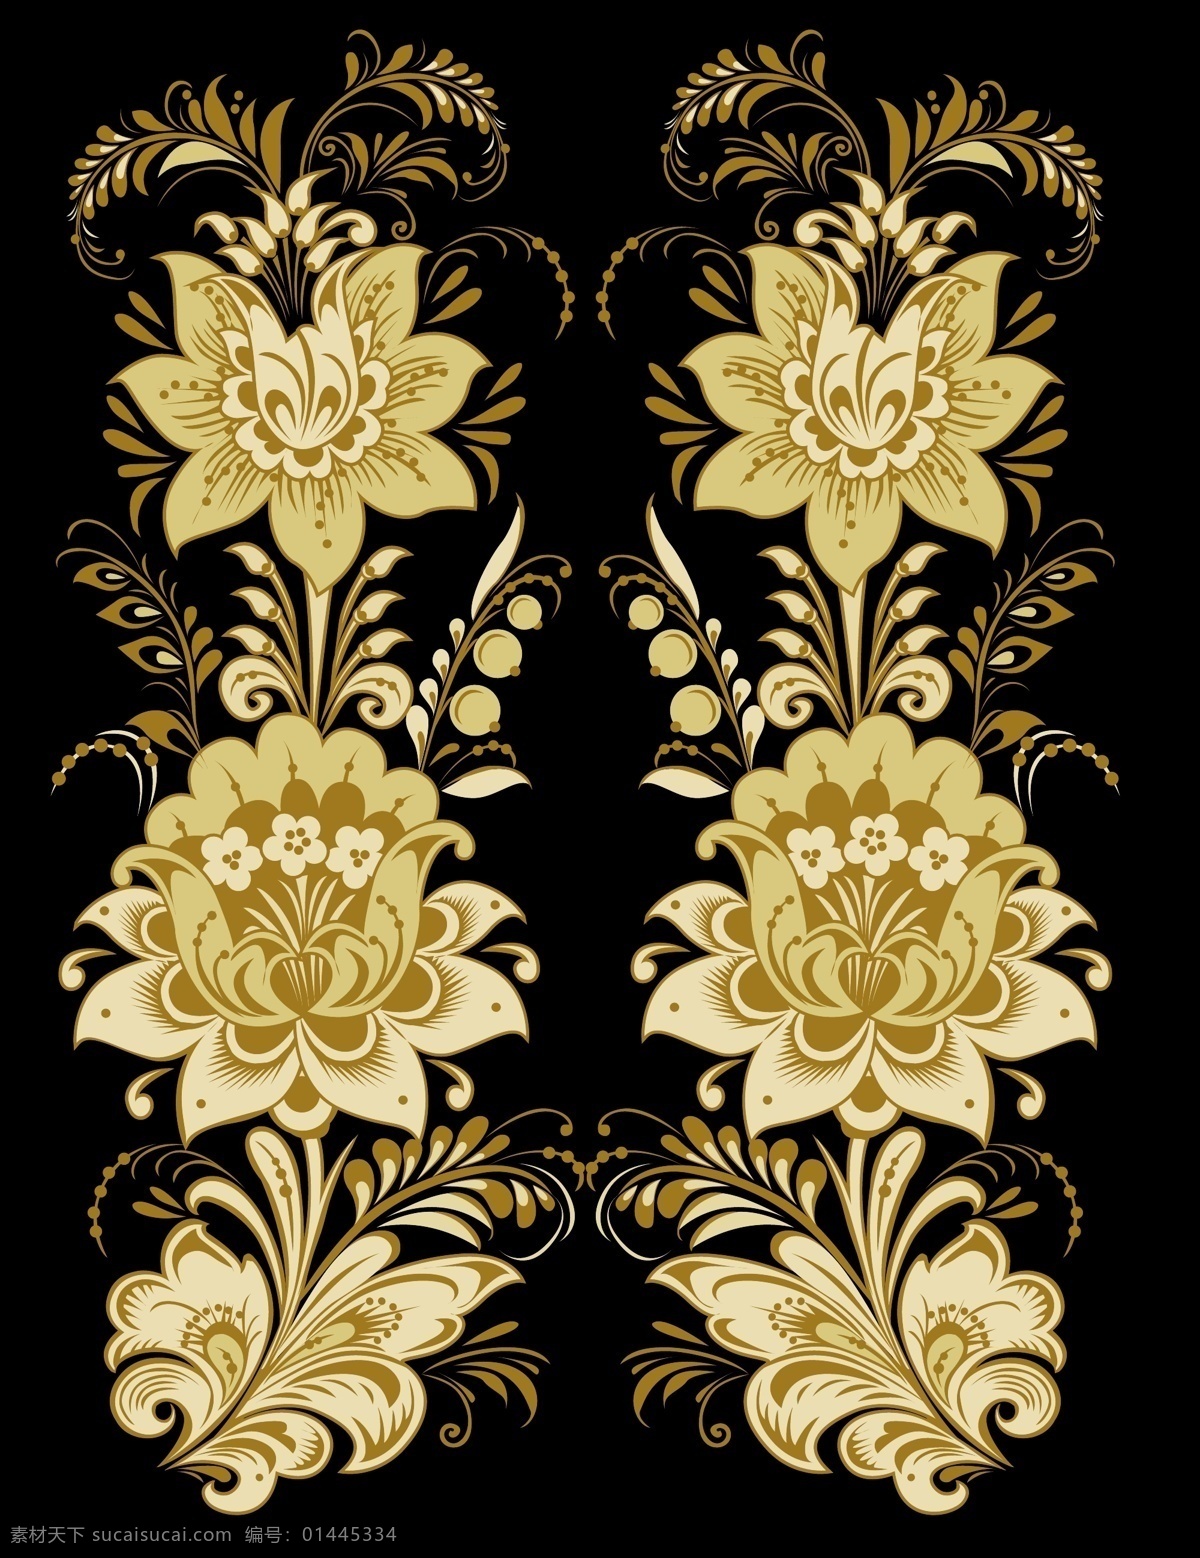 矢量 植物 古典 花纹 背景 花朵 矢量素材 装饰 家居装饰素材